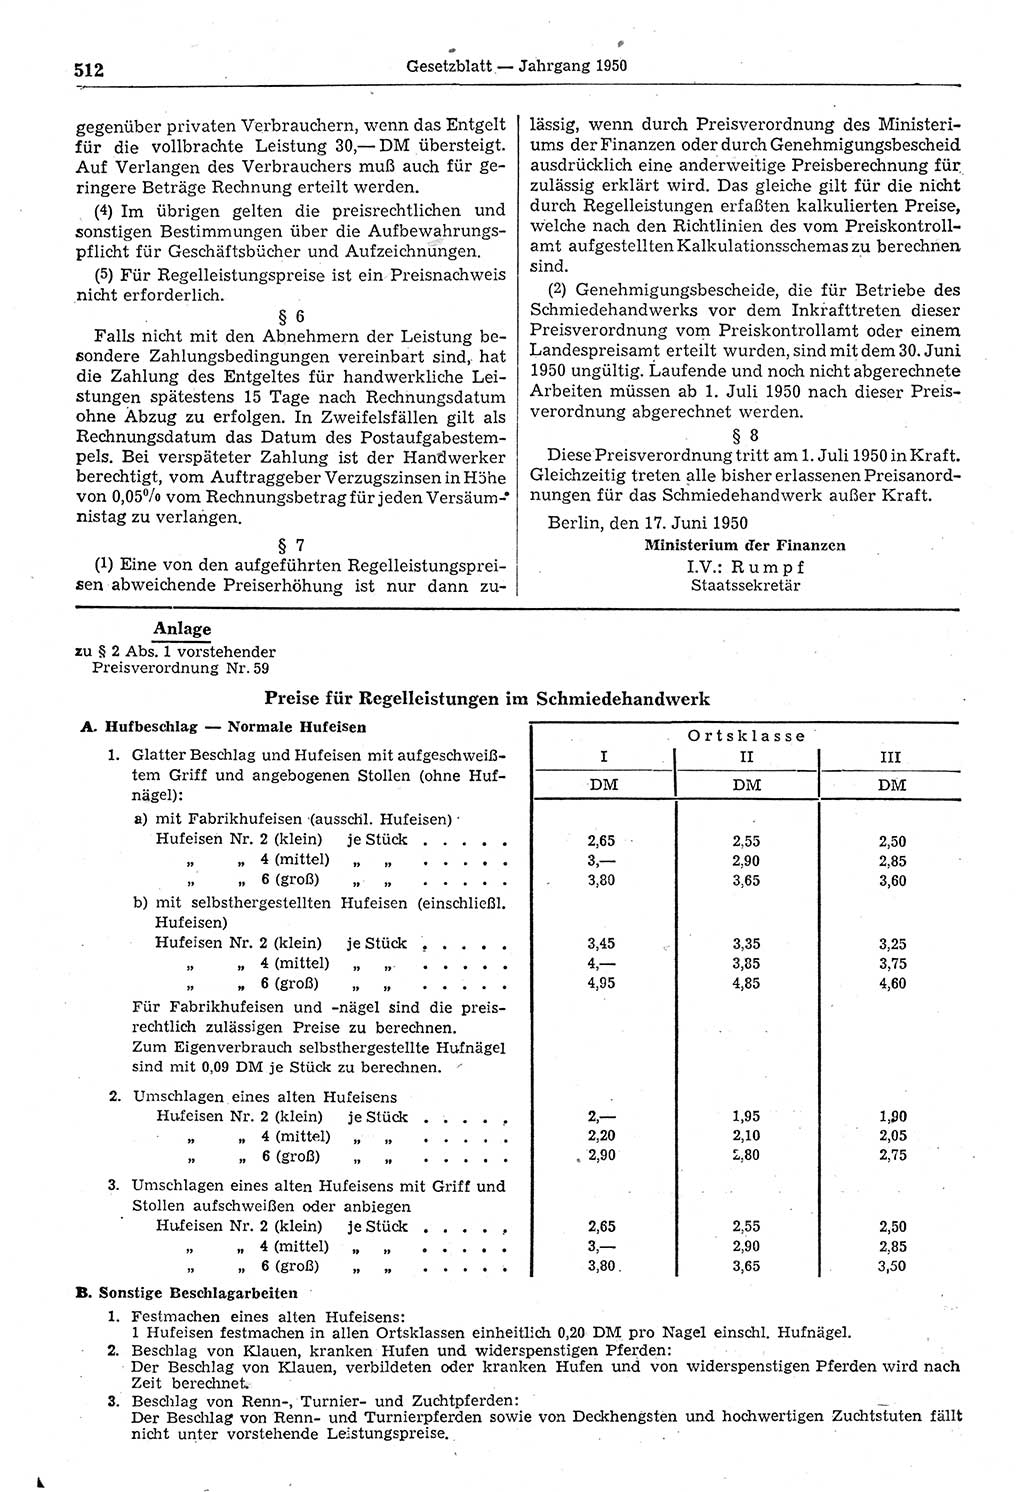 Gesetzblatt (GBl.) der Deutschen Demokratischen Republik (DDR) 1950, Seite 512 (GBl. DDR 1950, S. 512)